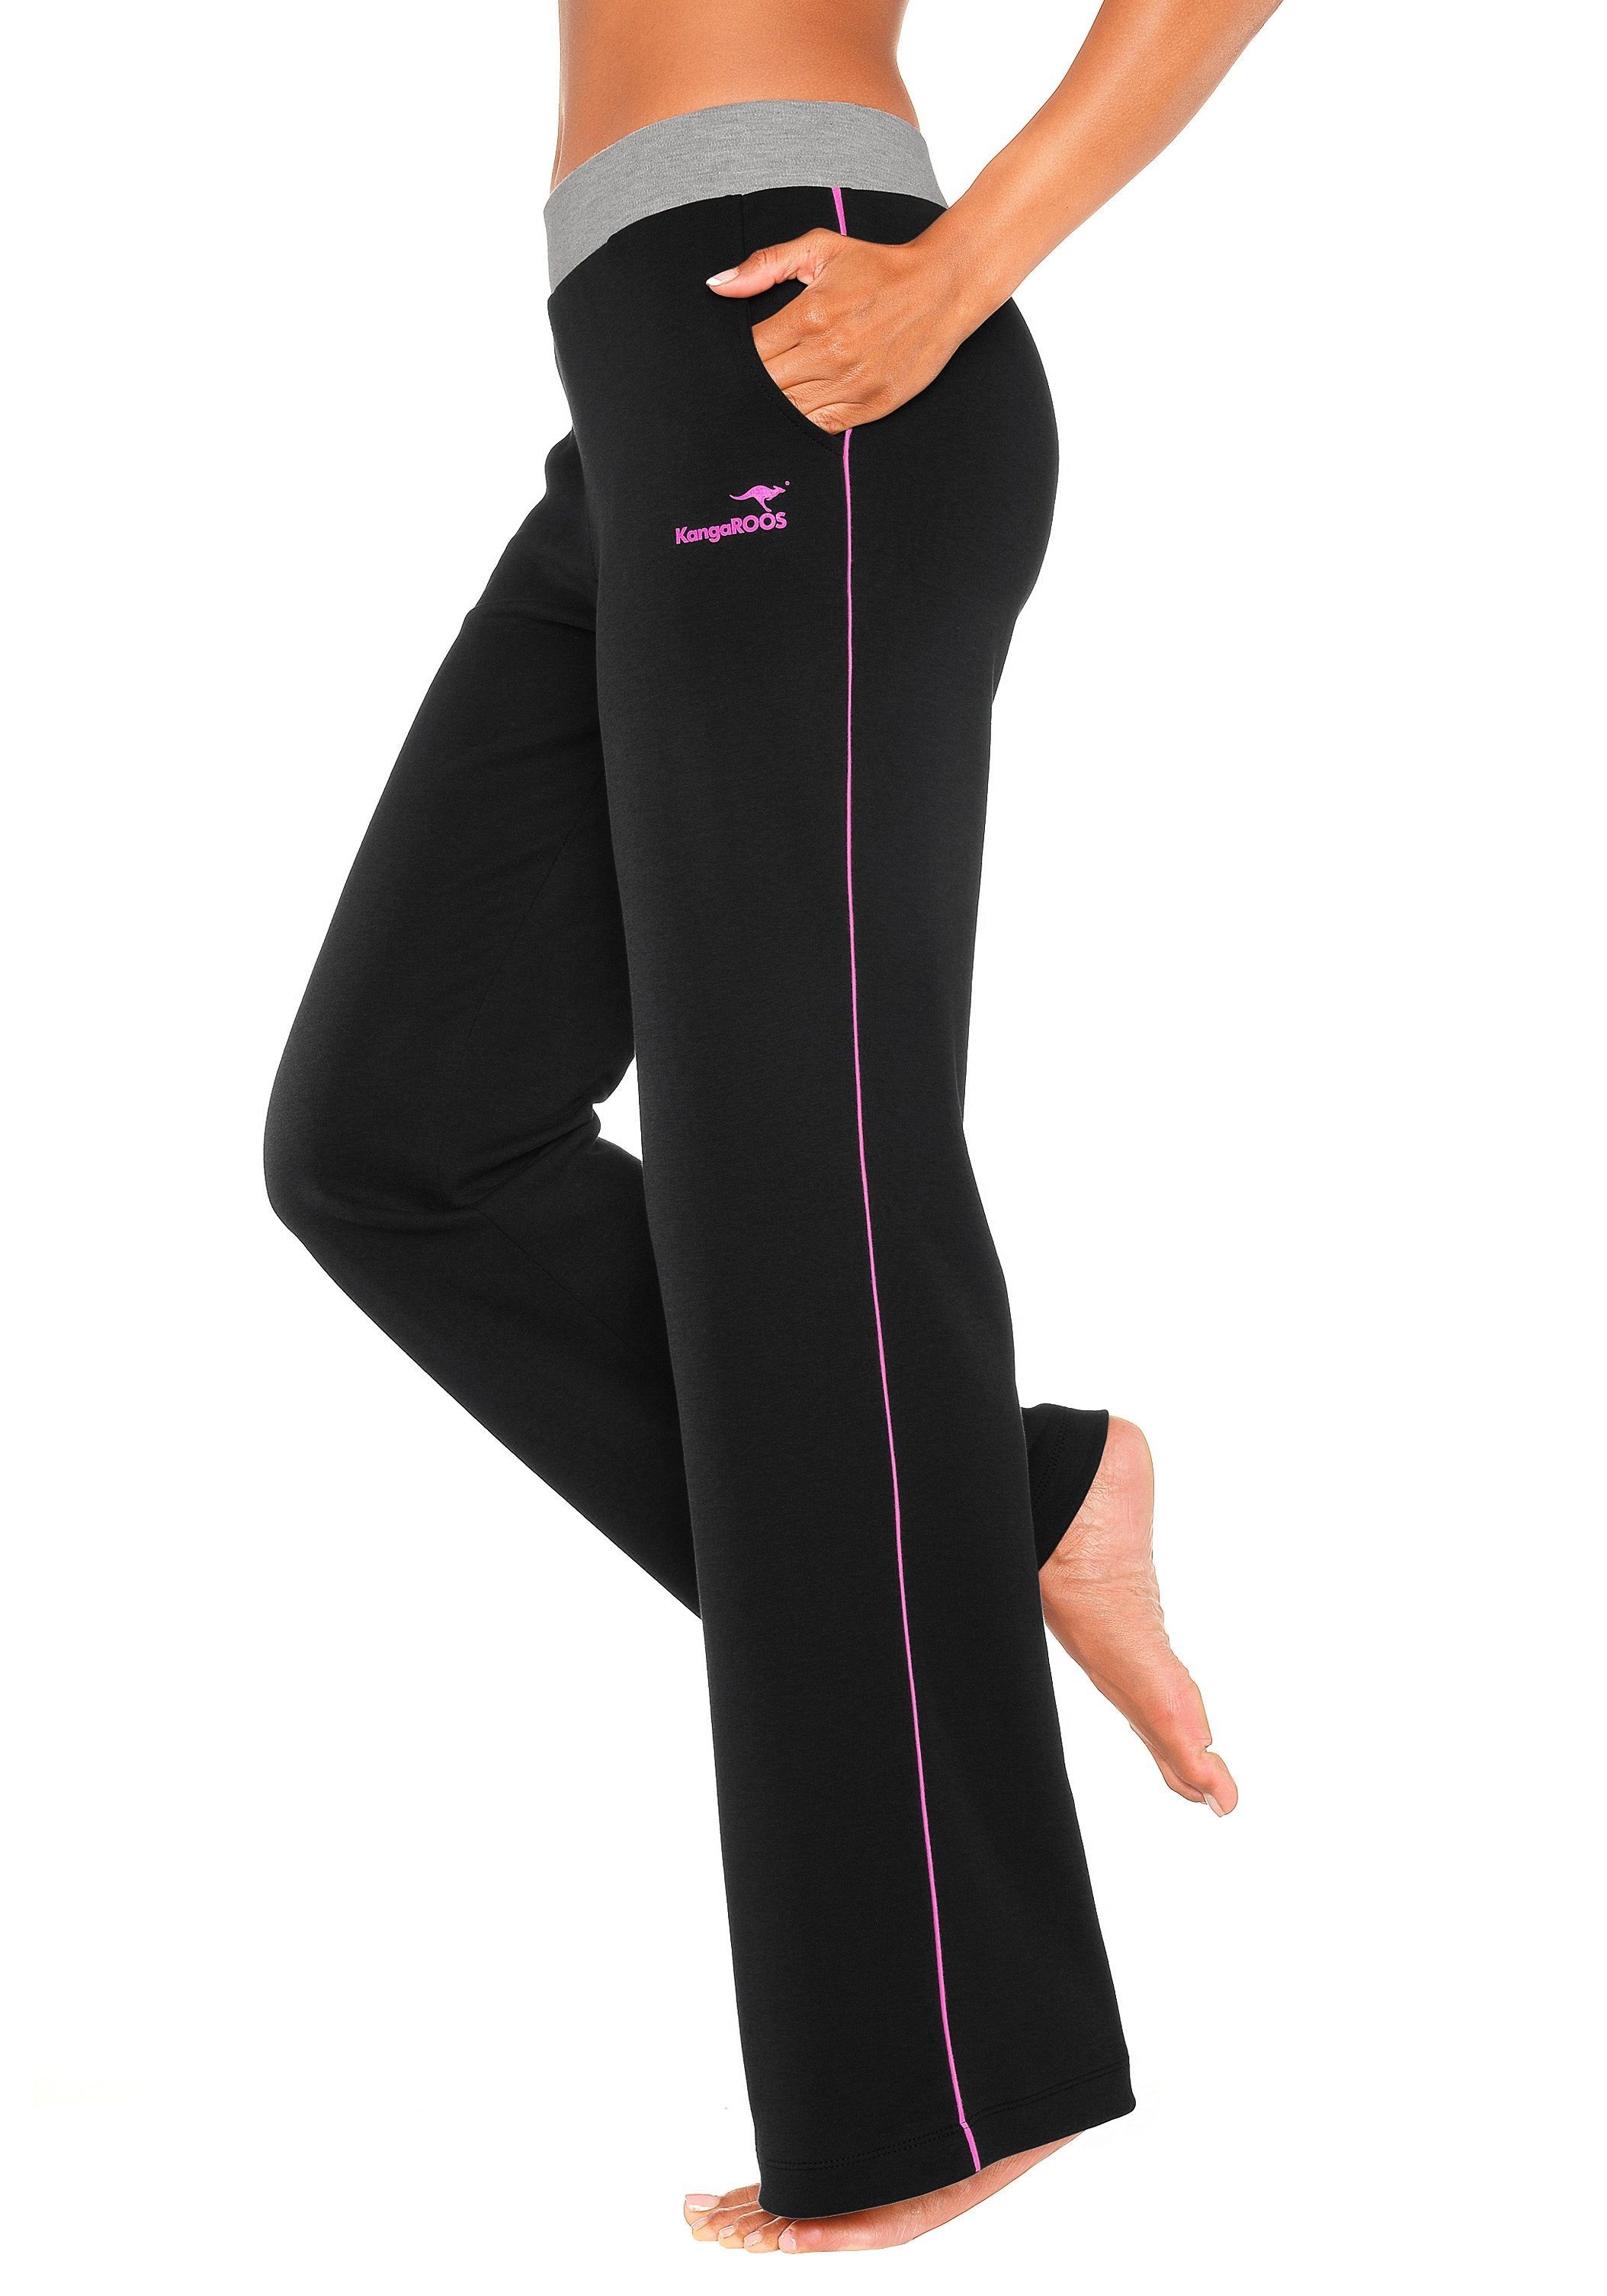 KangaROOS Relaxhose mit breitem Bund, schwarz-pink-pink Loungewear, Loungeanzug